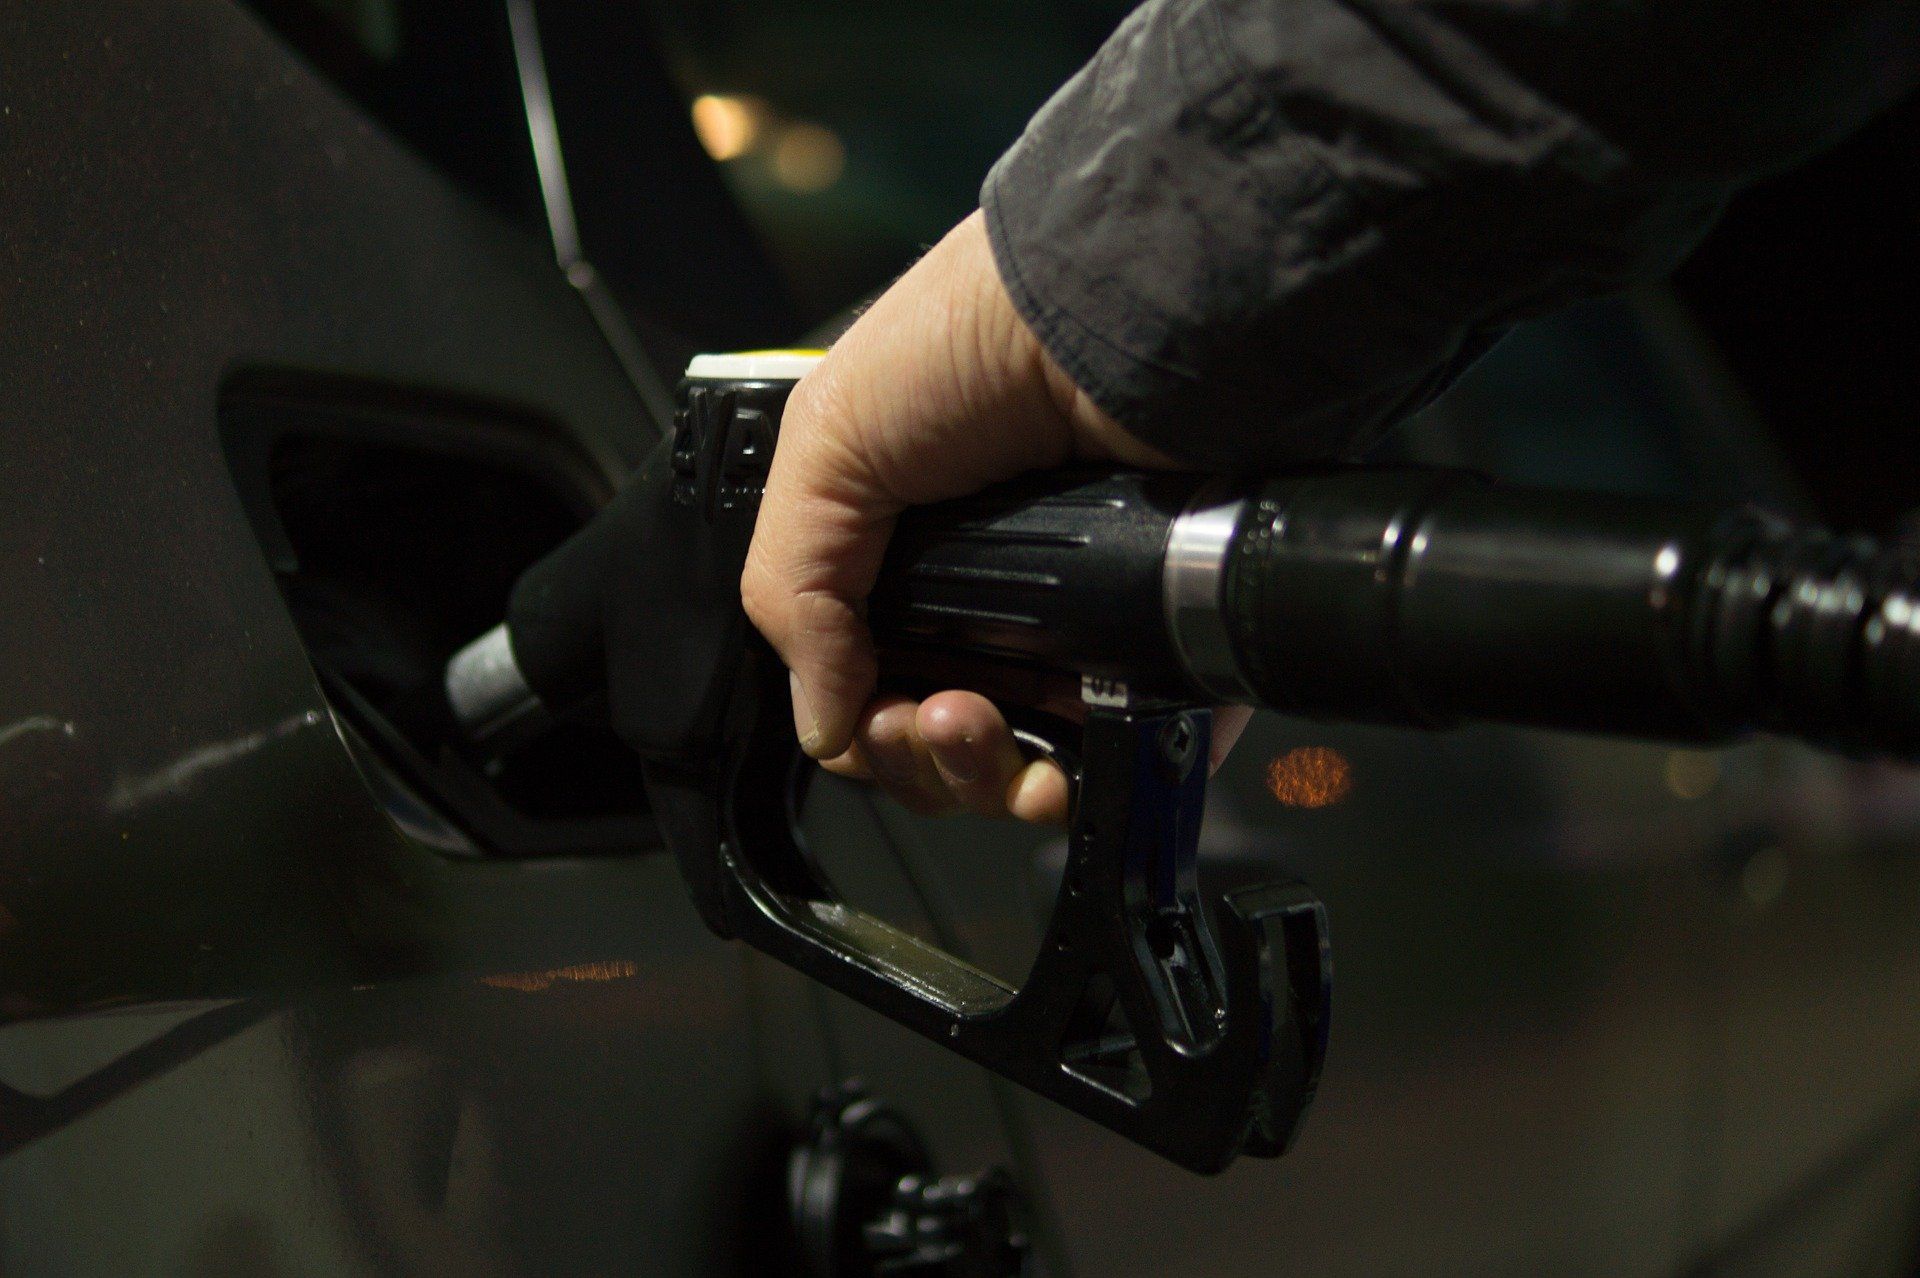 Fuel price June 7, 2022: Petrol Rs 96.72, diesel Rs 89.62 in Delhi